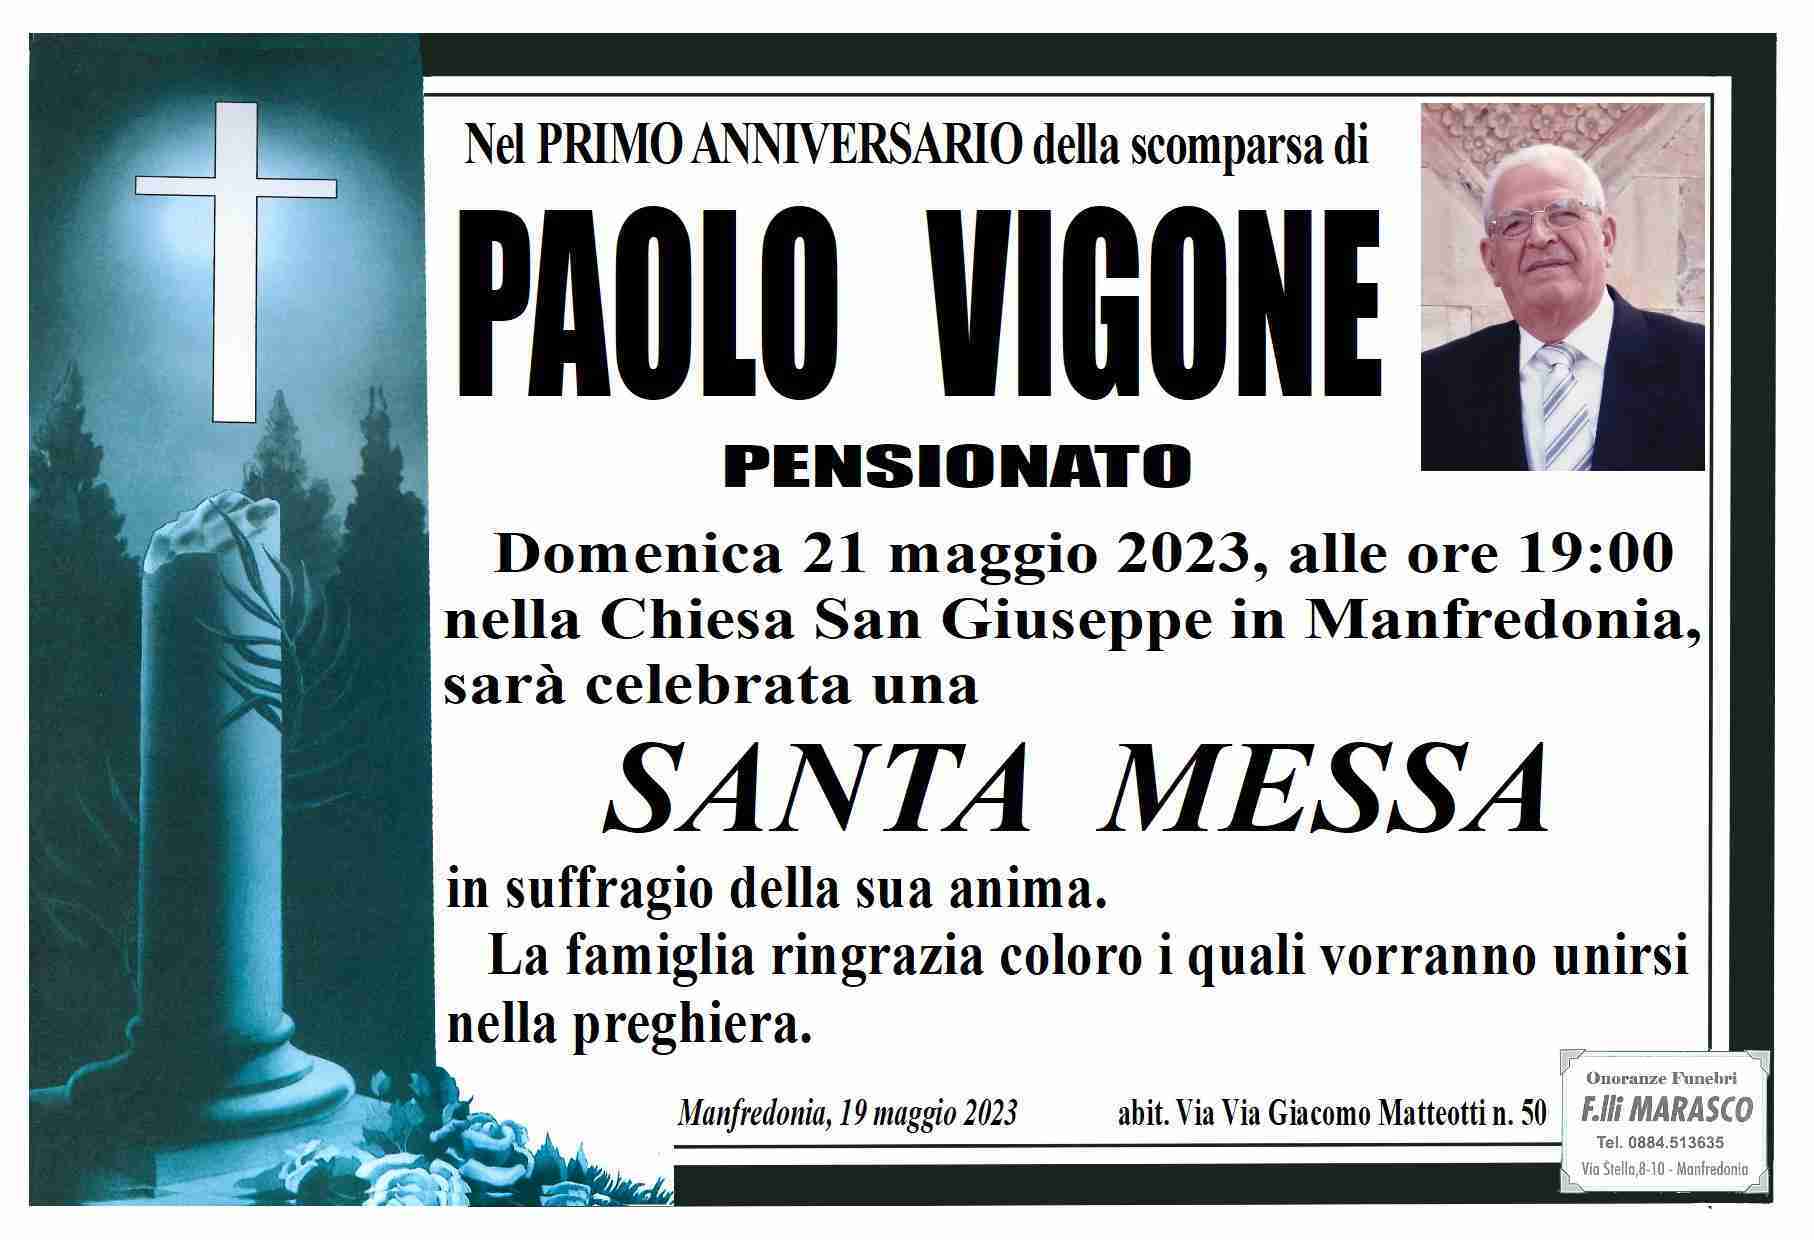 Paolo Vigone